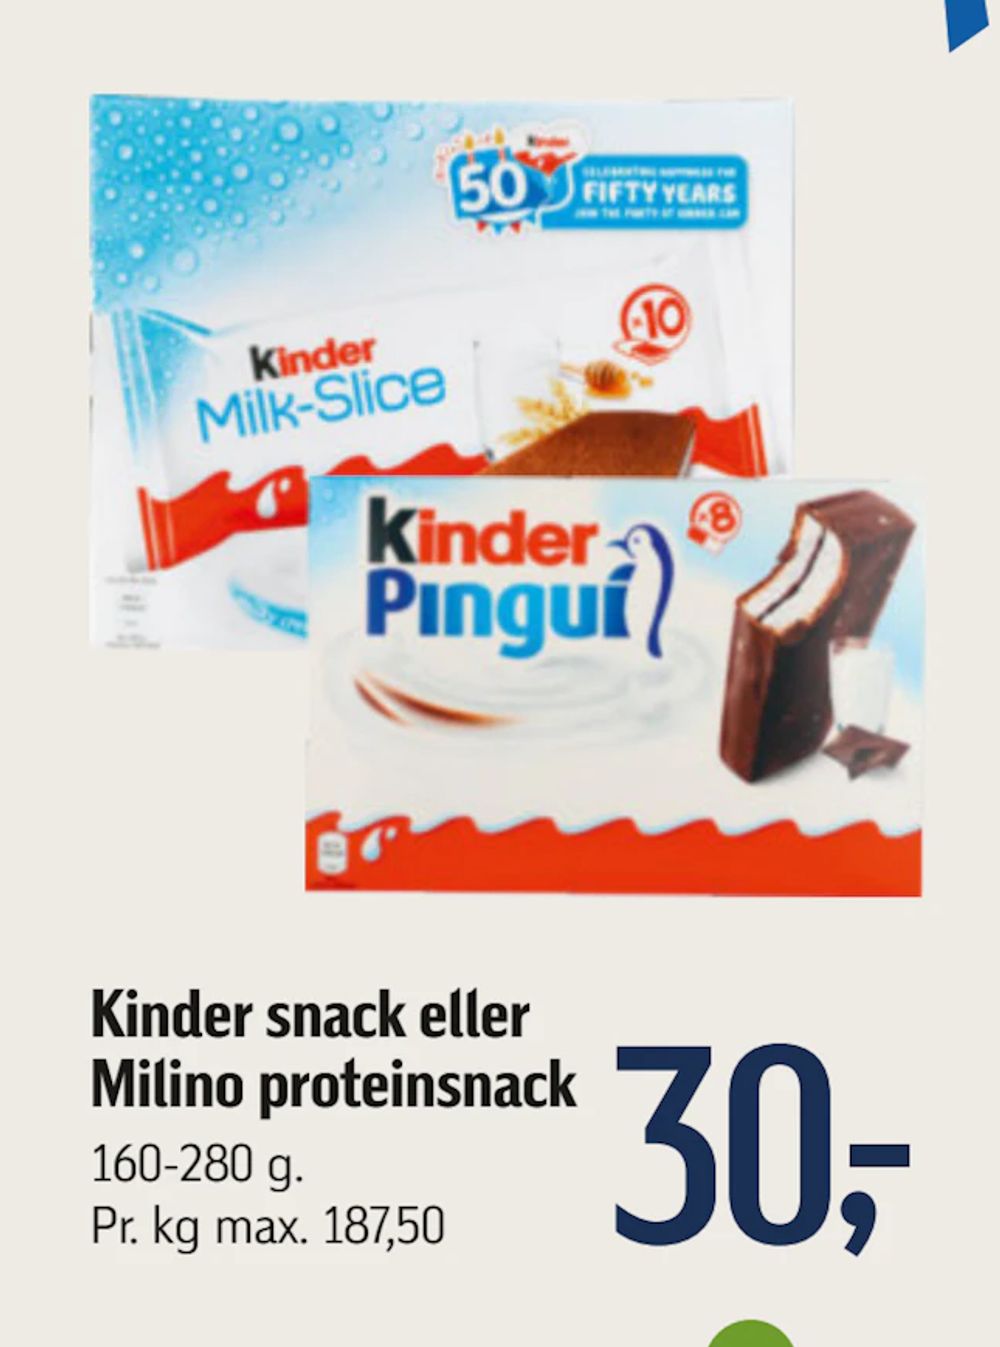 Tilbud på Kinder snack eller Milino proteinsnack fra føtex til 30 kr.